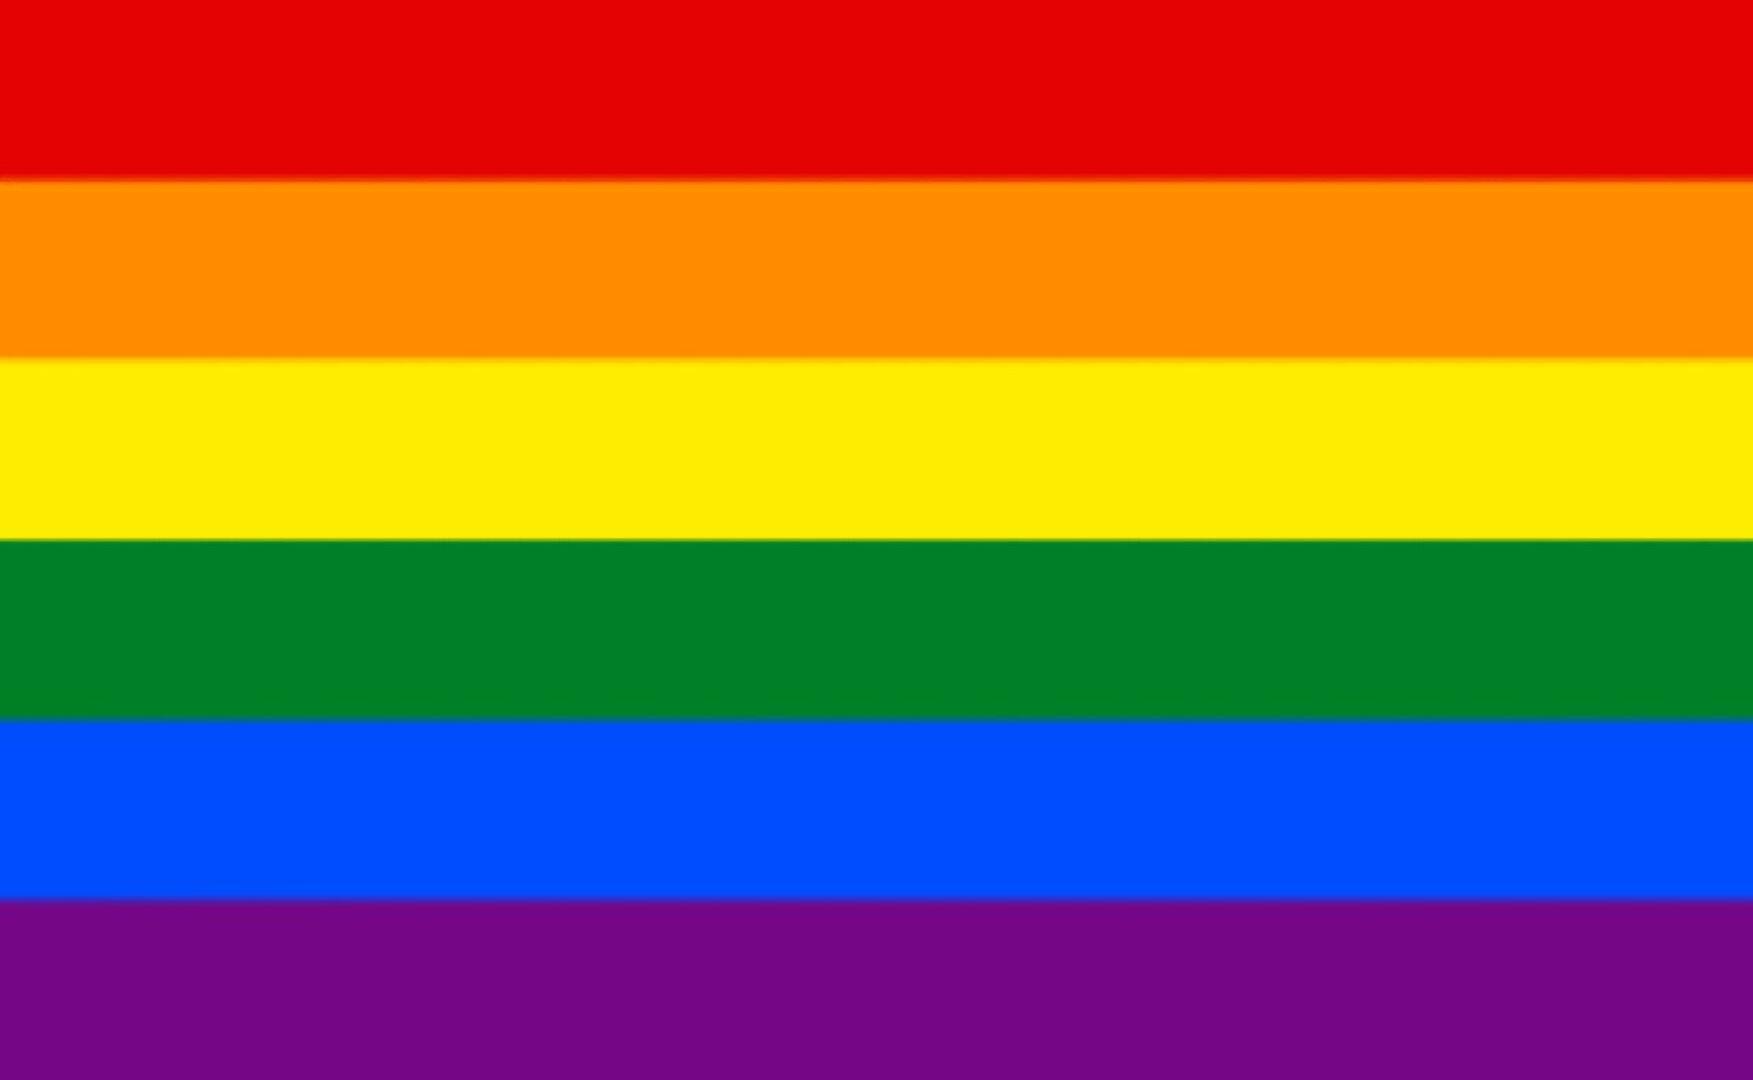 Maanantaina tehdyssä valtuustoaloitteessa esitetään, että Haapaveden kaupunki nostaa pride-viikolla sateenkaariliput salkoihin. Pride-viikkoa vietetään tänä kesänä 28.6.-4.7.